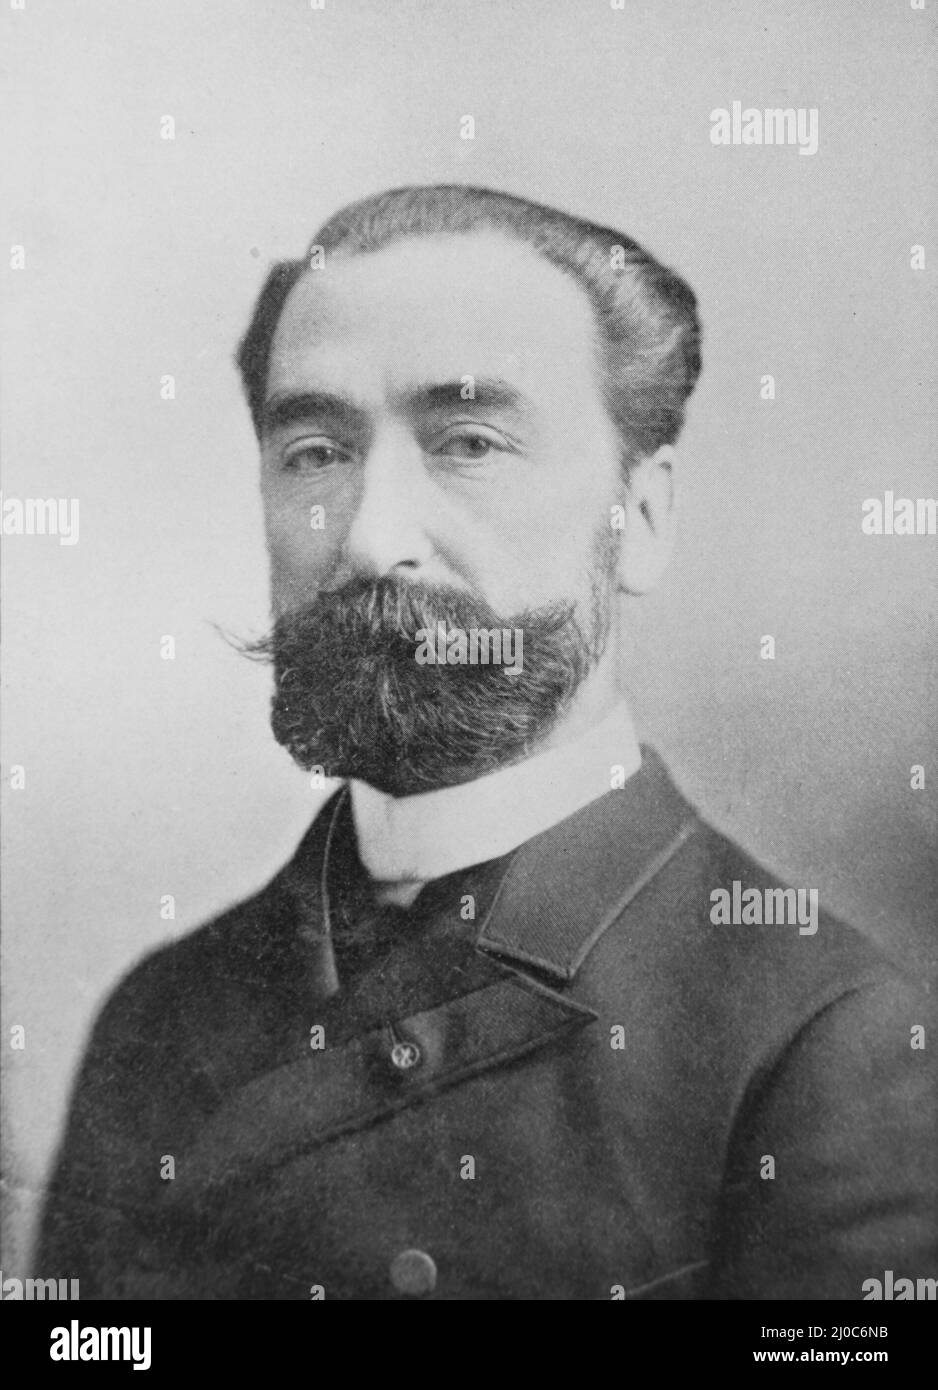 Porträt von Nicolas Léonard Sadi Carnot, Vater der Thermodynamik; Schwarz-Weiß-Fotografie, aufgenommen um 1890s Stockfoto